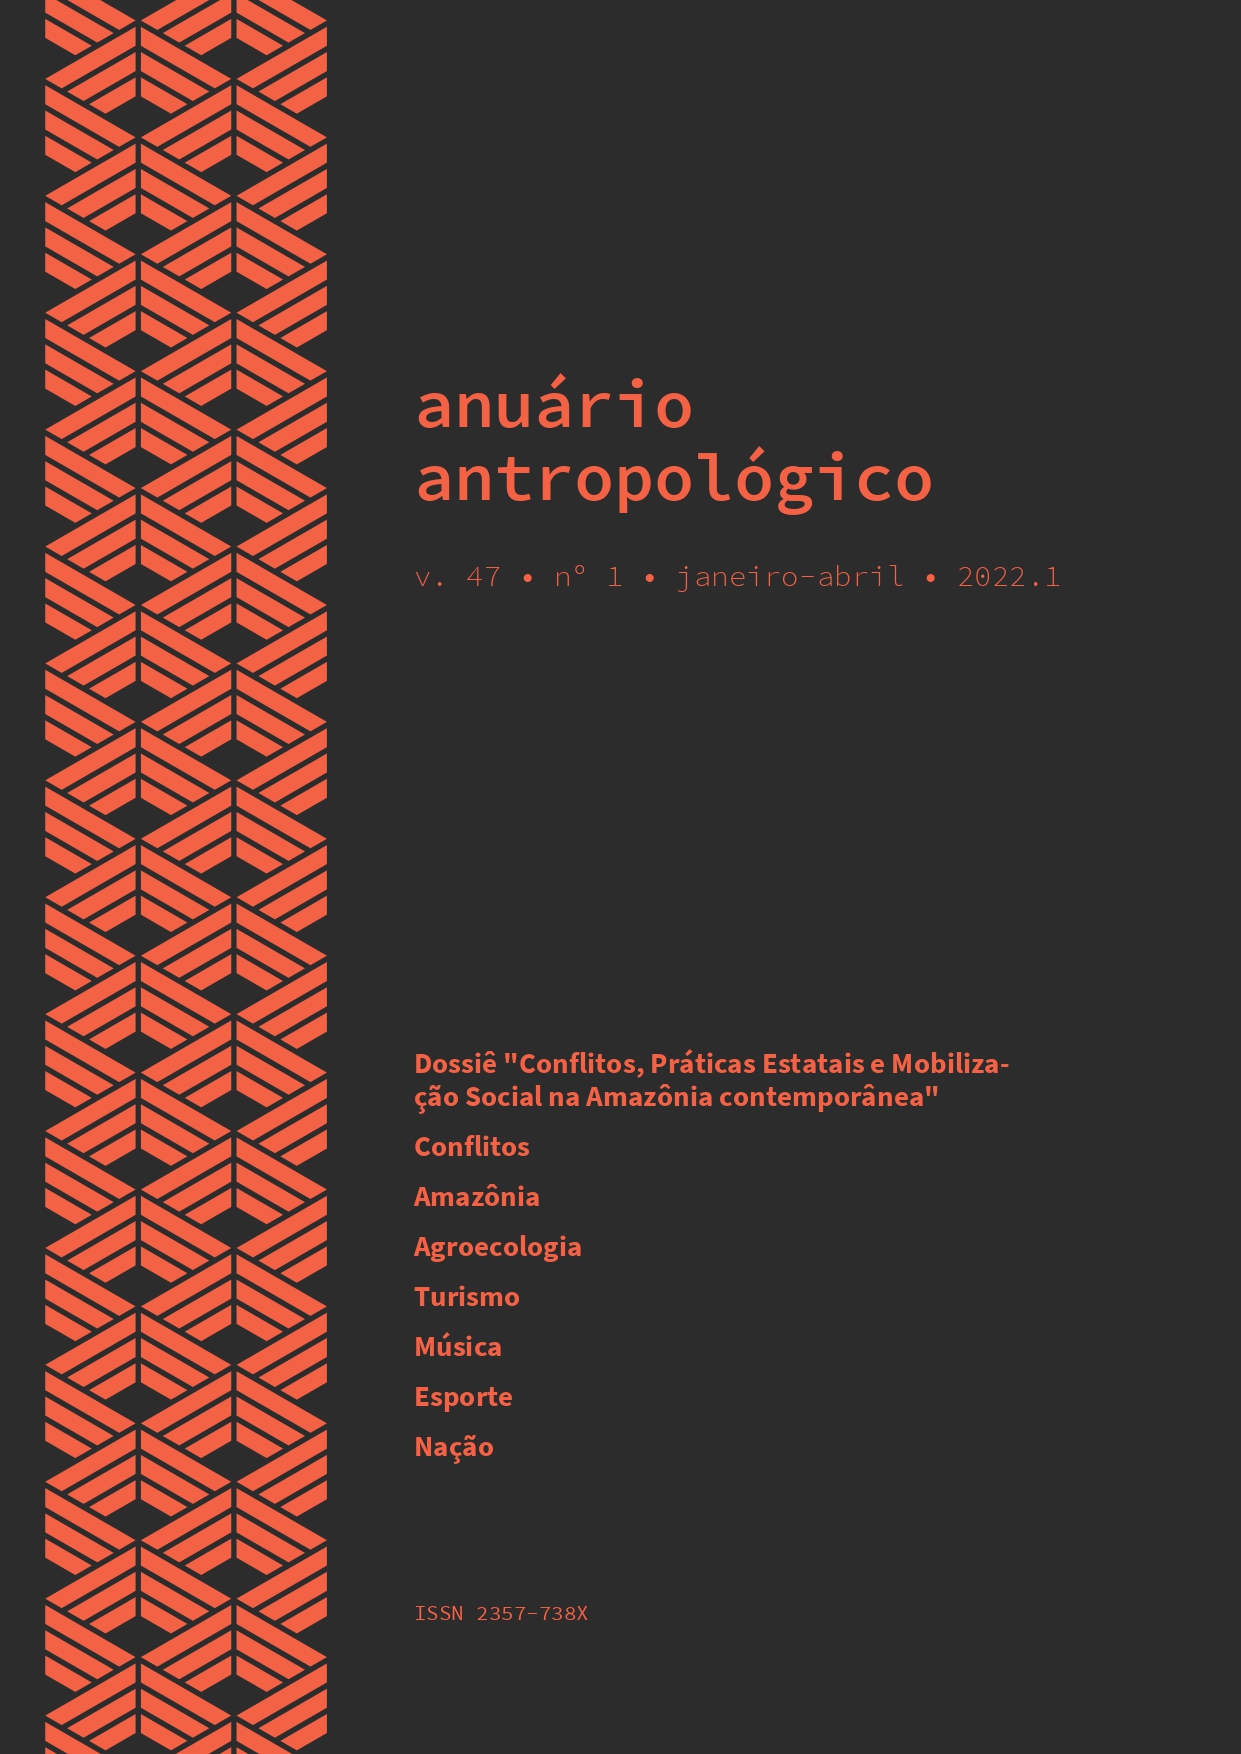 					Visualizar v. 47 n. 1 (2022): Anuário Antropológico
				